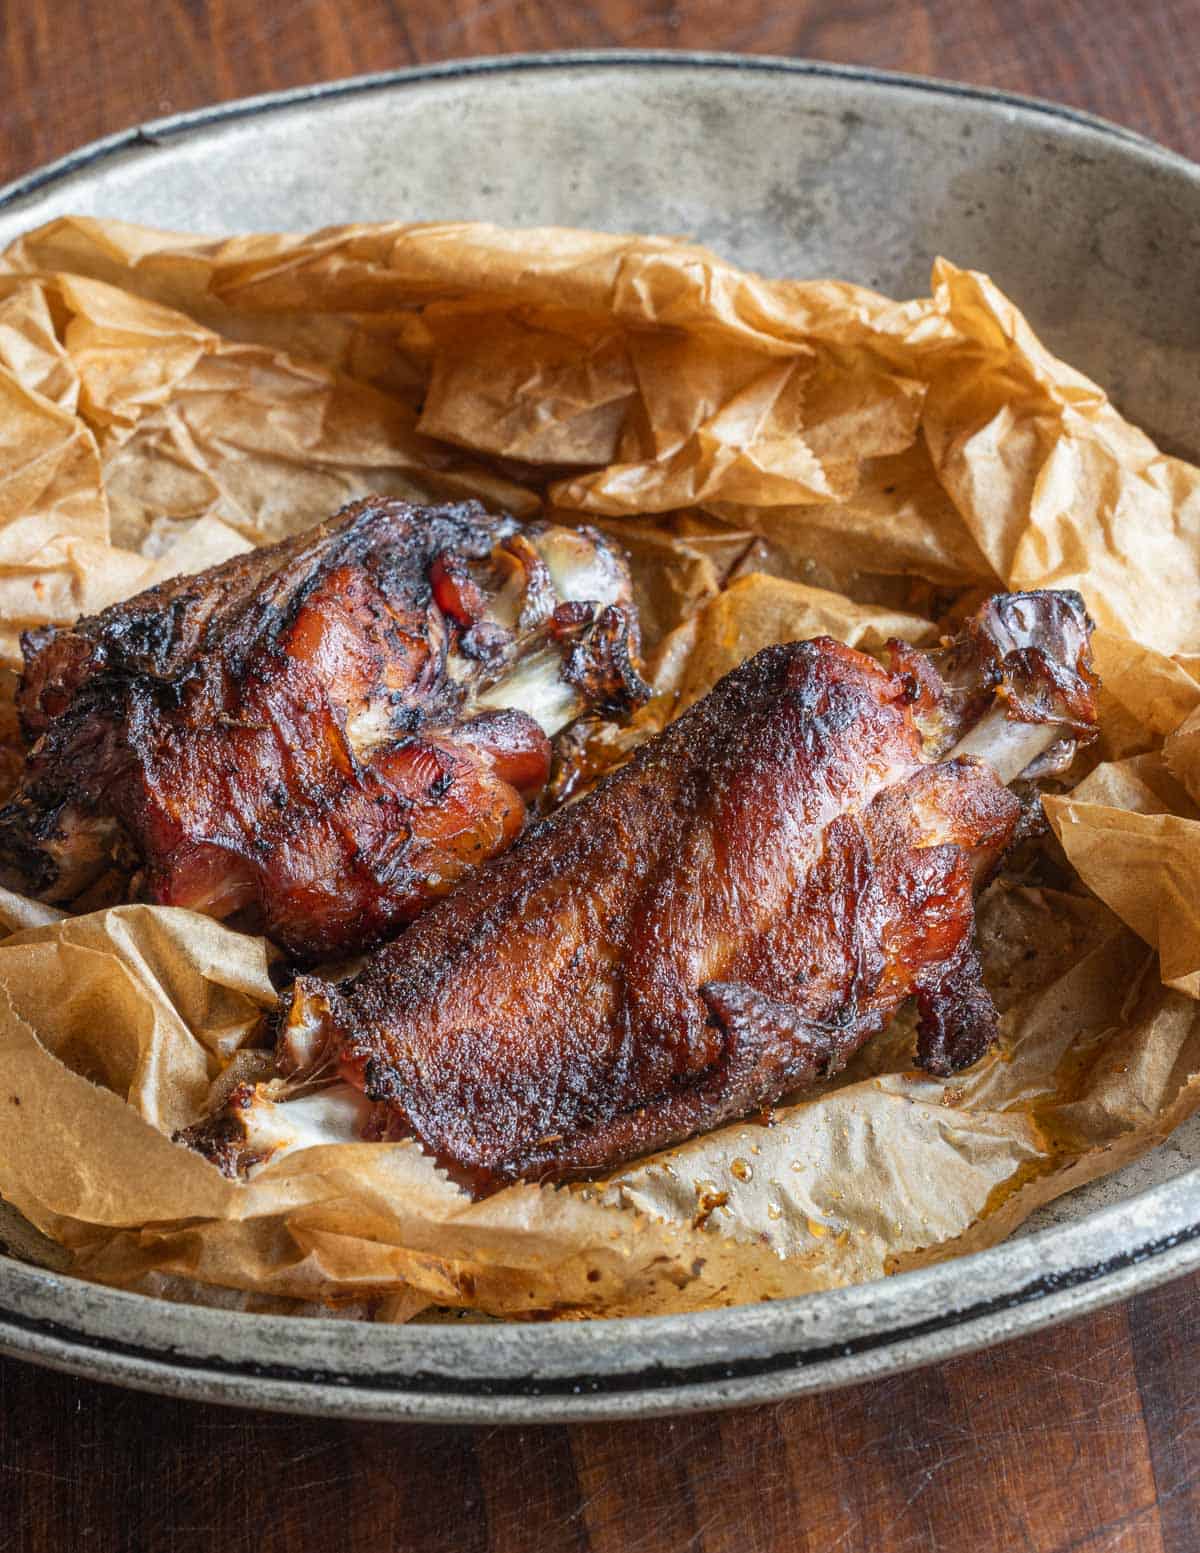 Smoked khati khati chicken or turkey wings. 